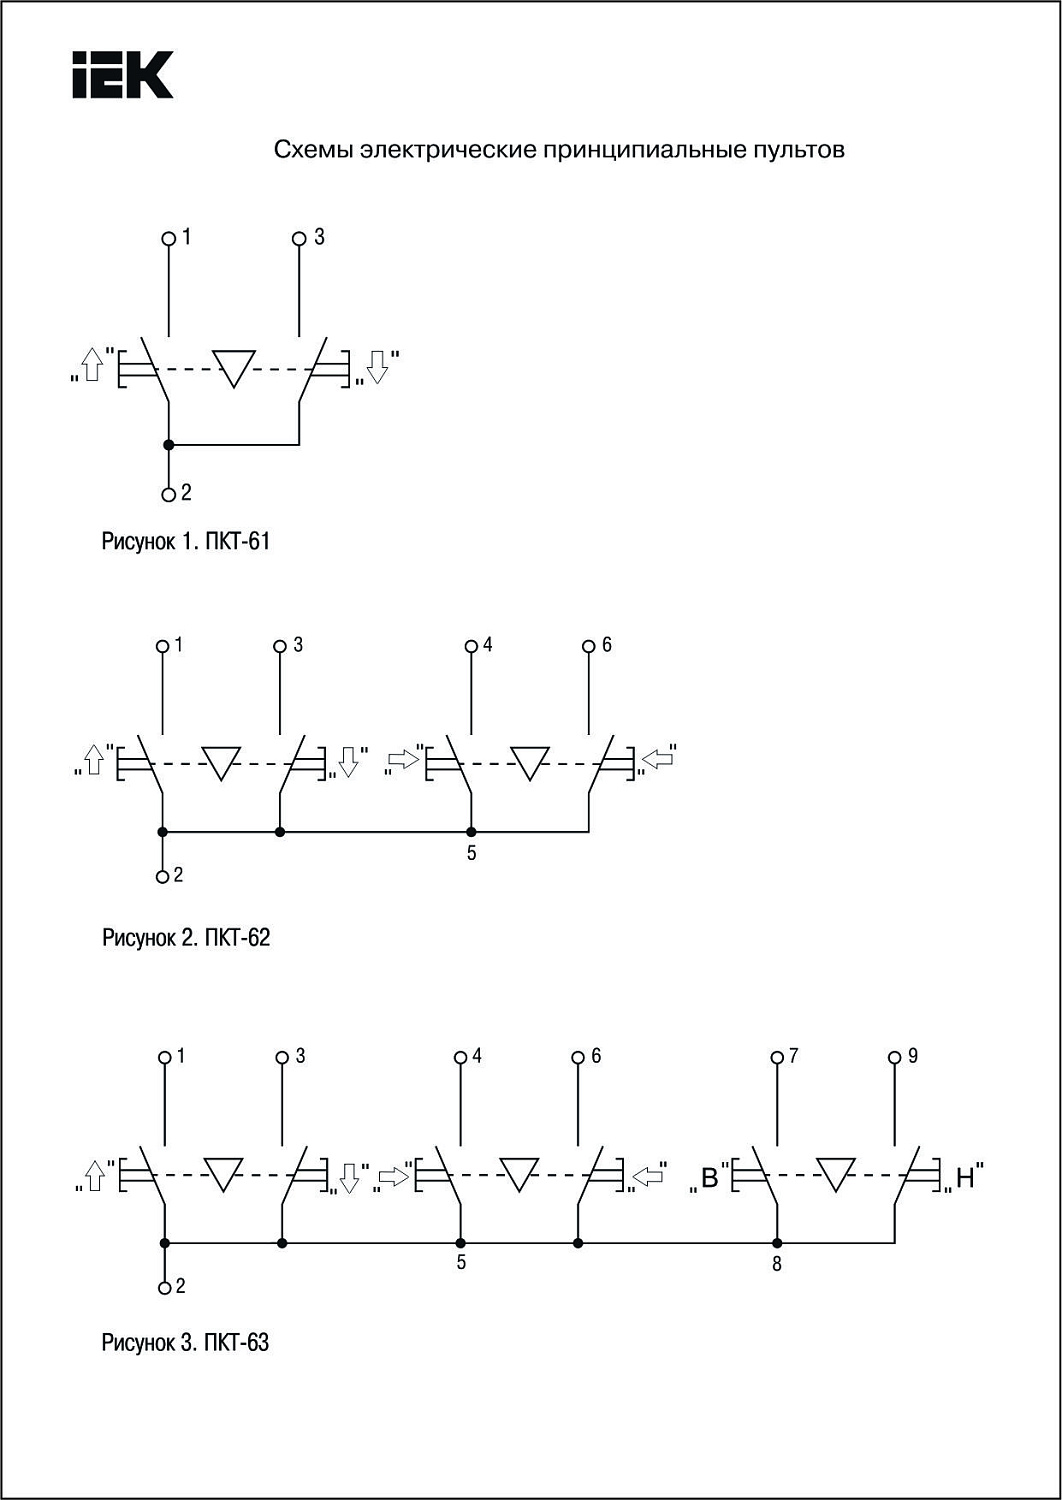 Пульт управления на 2 кнопки IP54 тип ПКТ-61 BPU10-2 IEK (ИЭК)